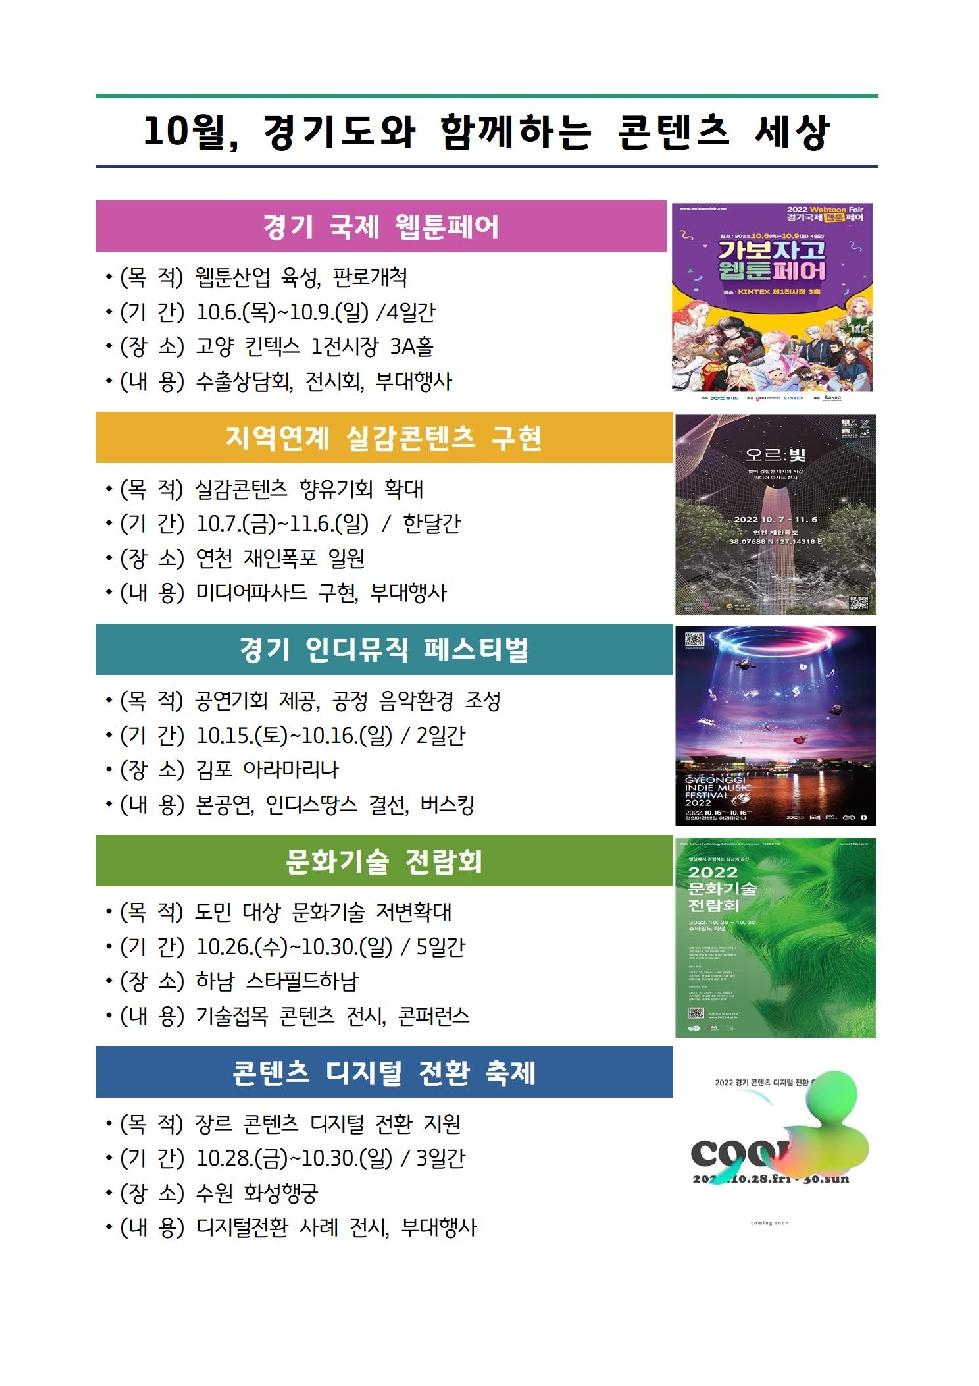 경기도, 웹툰·문화기술 등 콘텐츠 행사 5개 10월 연이어 개최